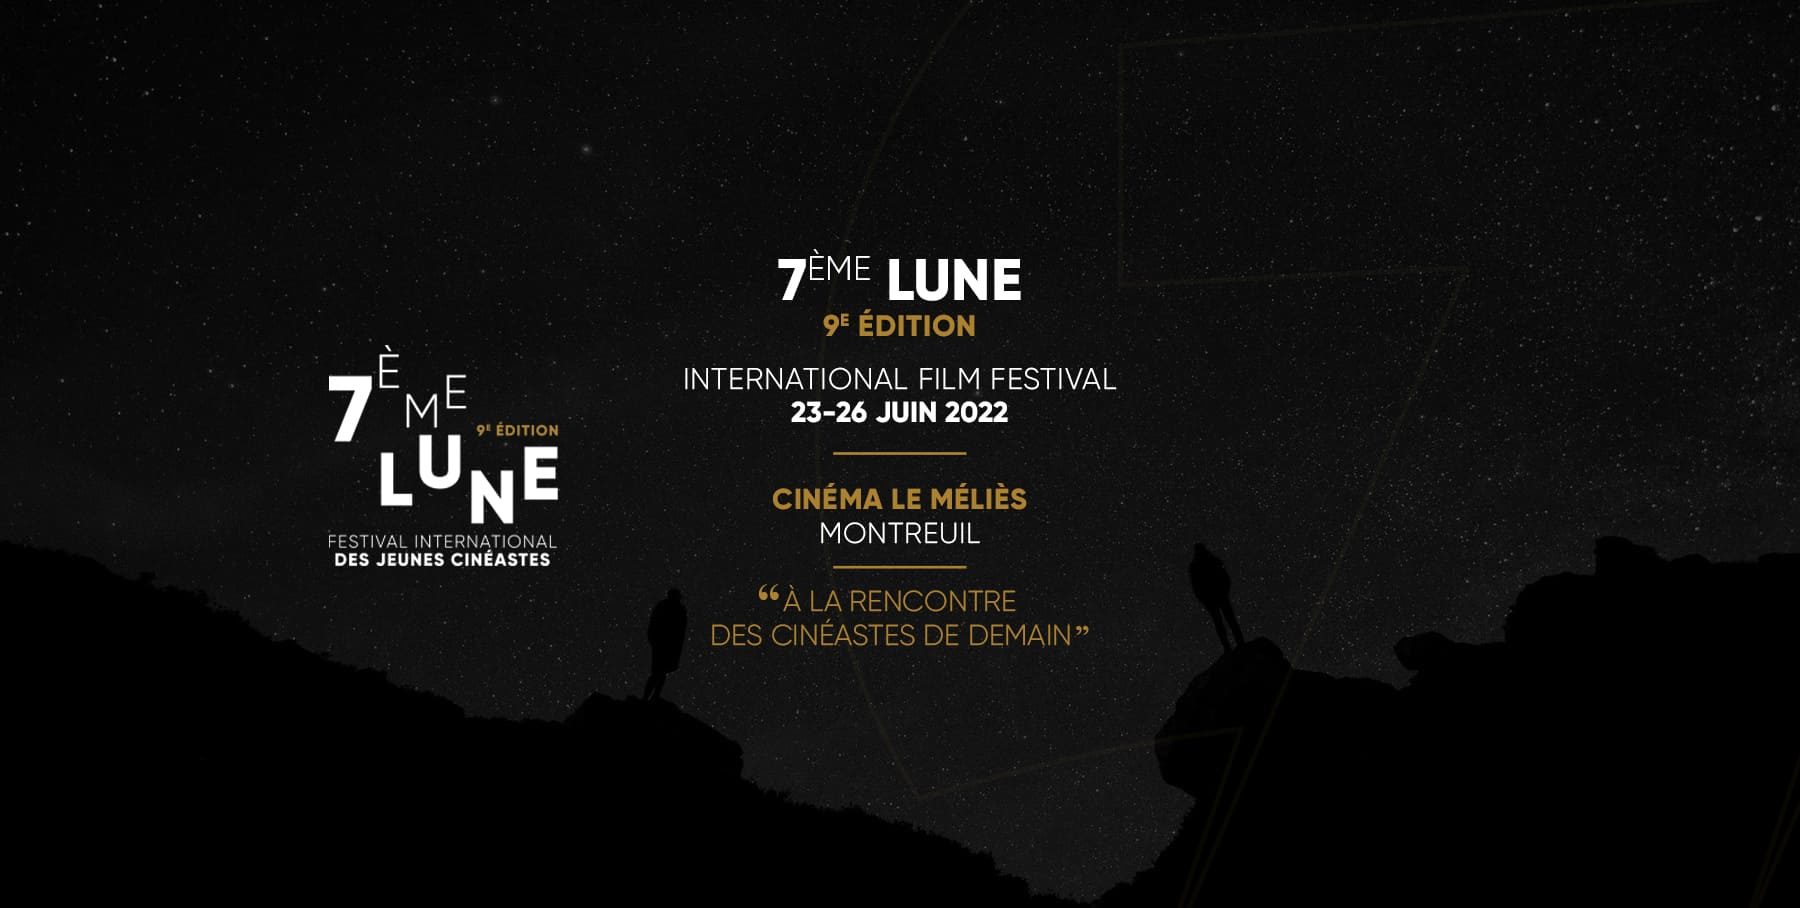 7ème Lune - Festival International des jeunes cinéastes